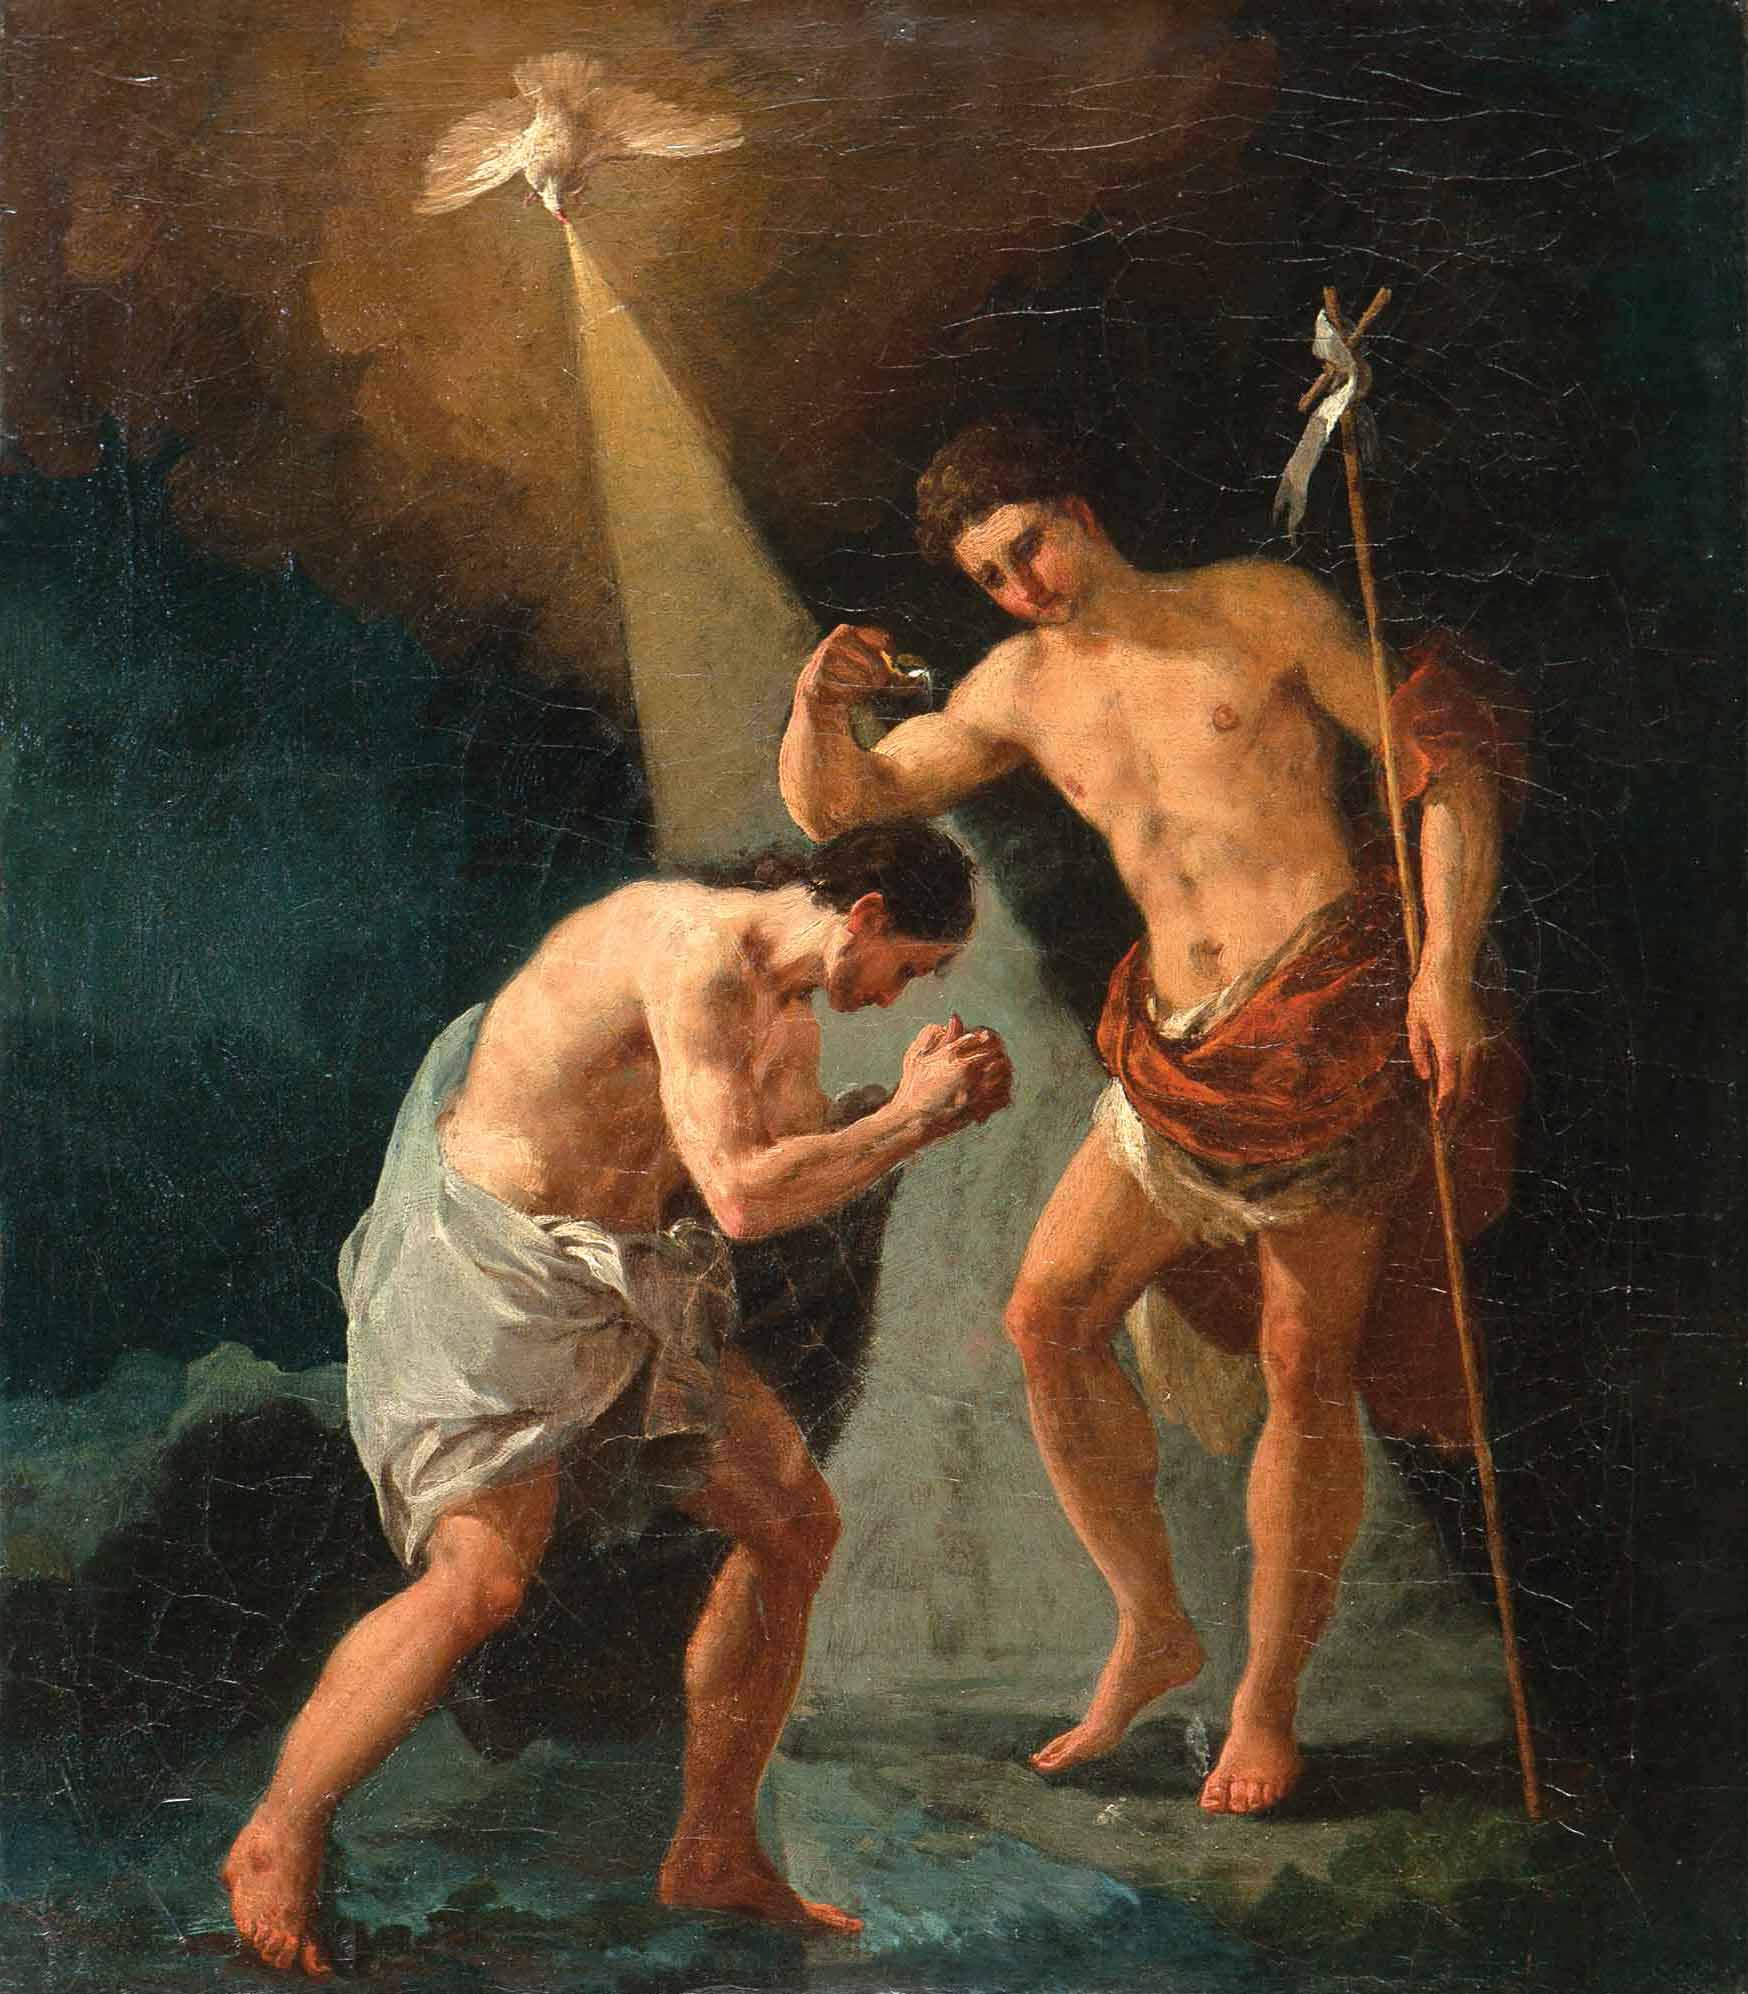 Francisco de Goya, Bautismo de Cristo, c. 1774. Salida y remate: 2.500.000 euros